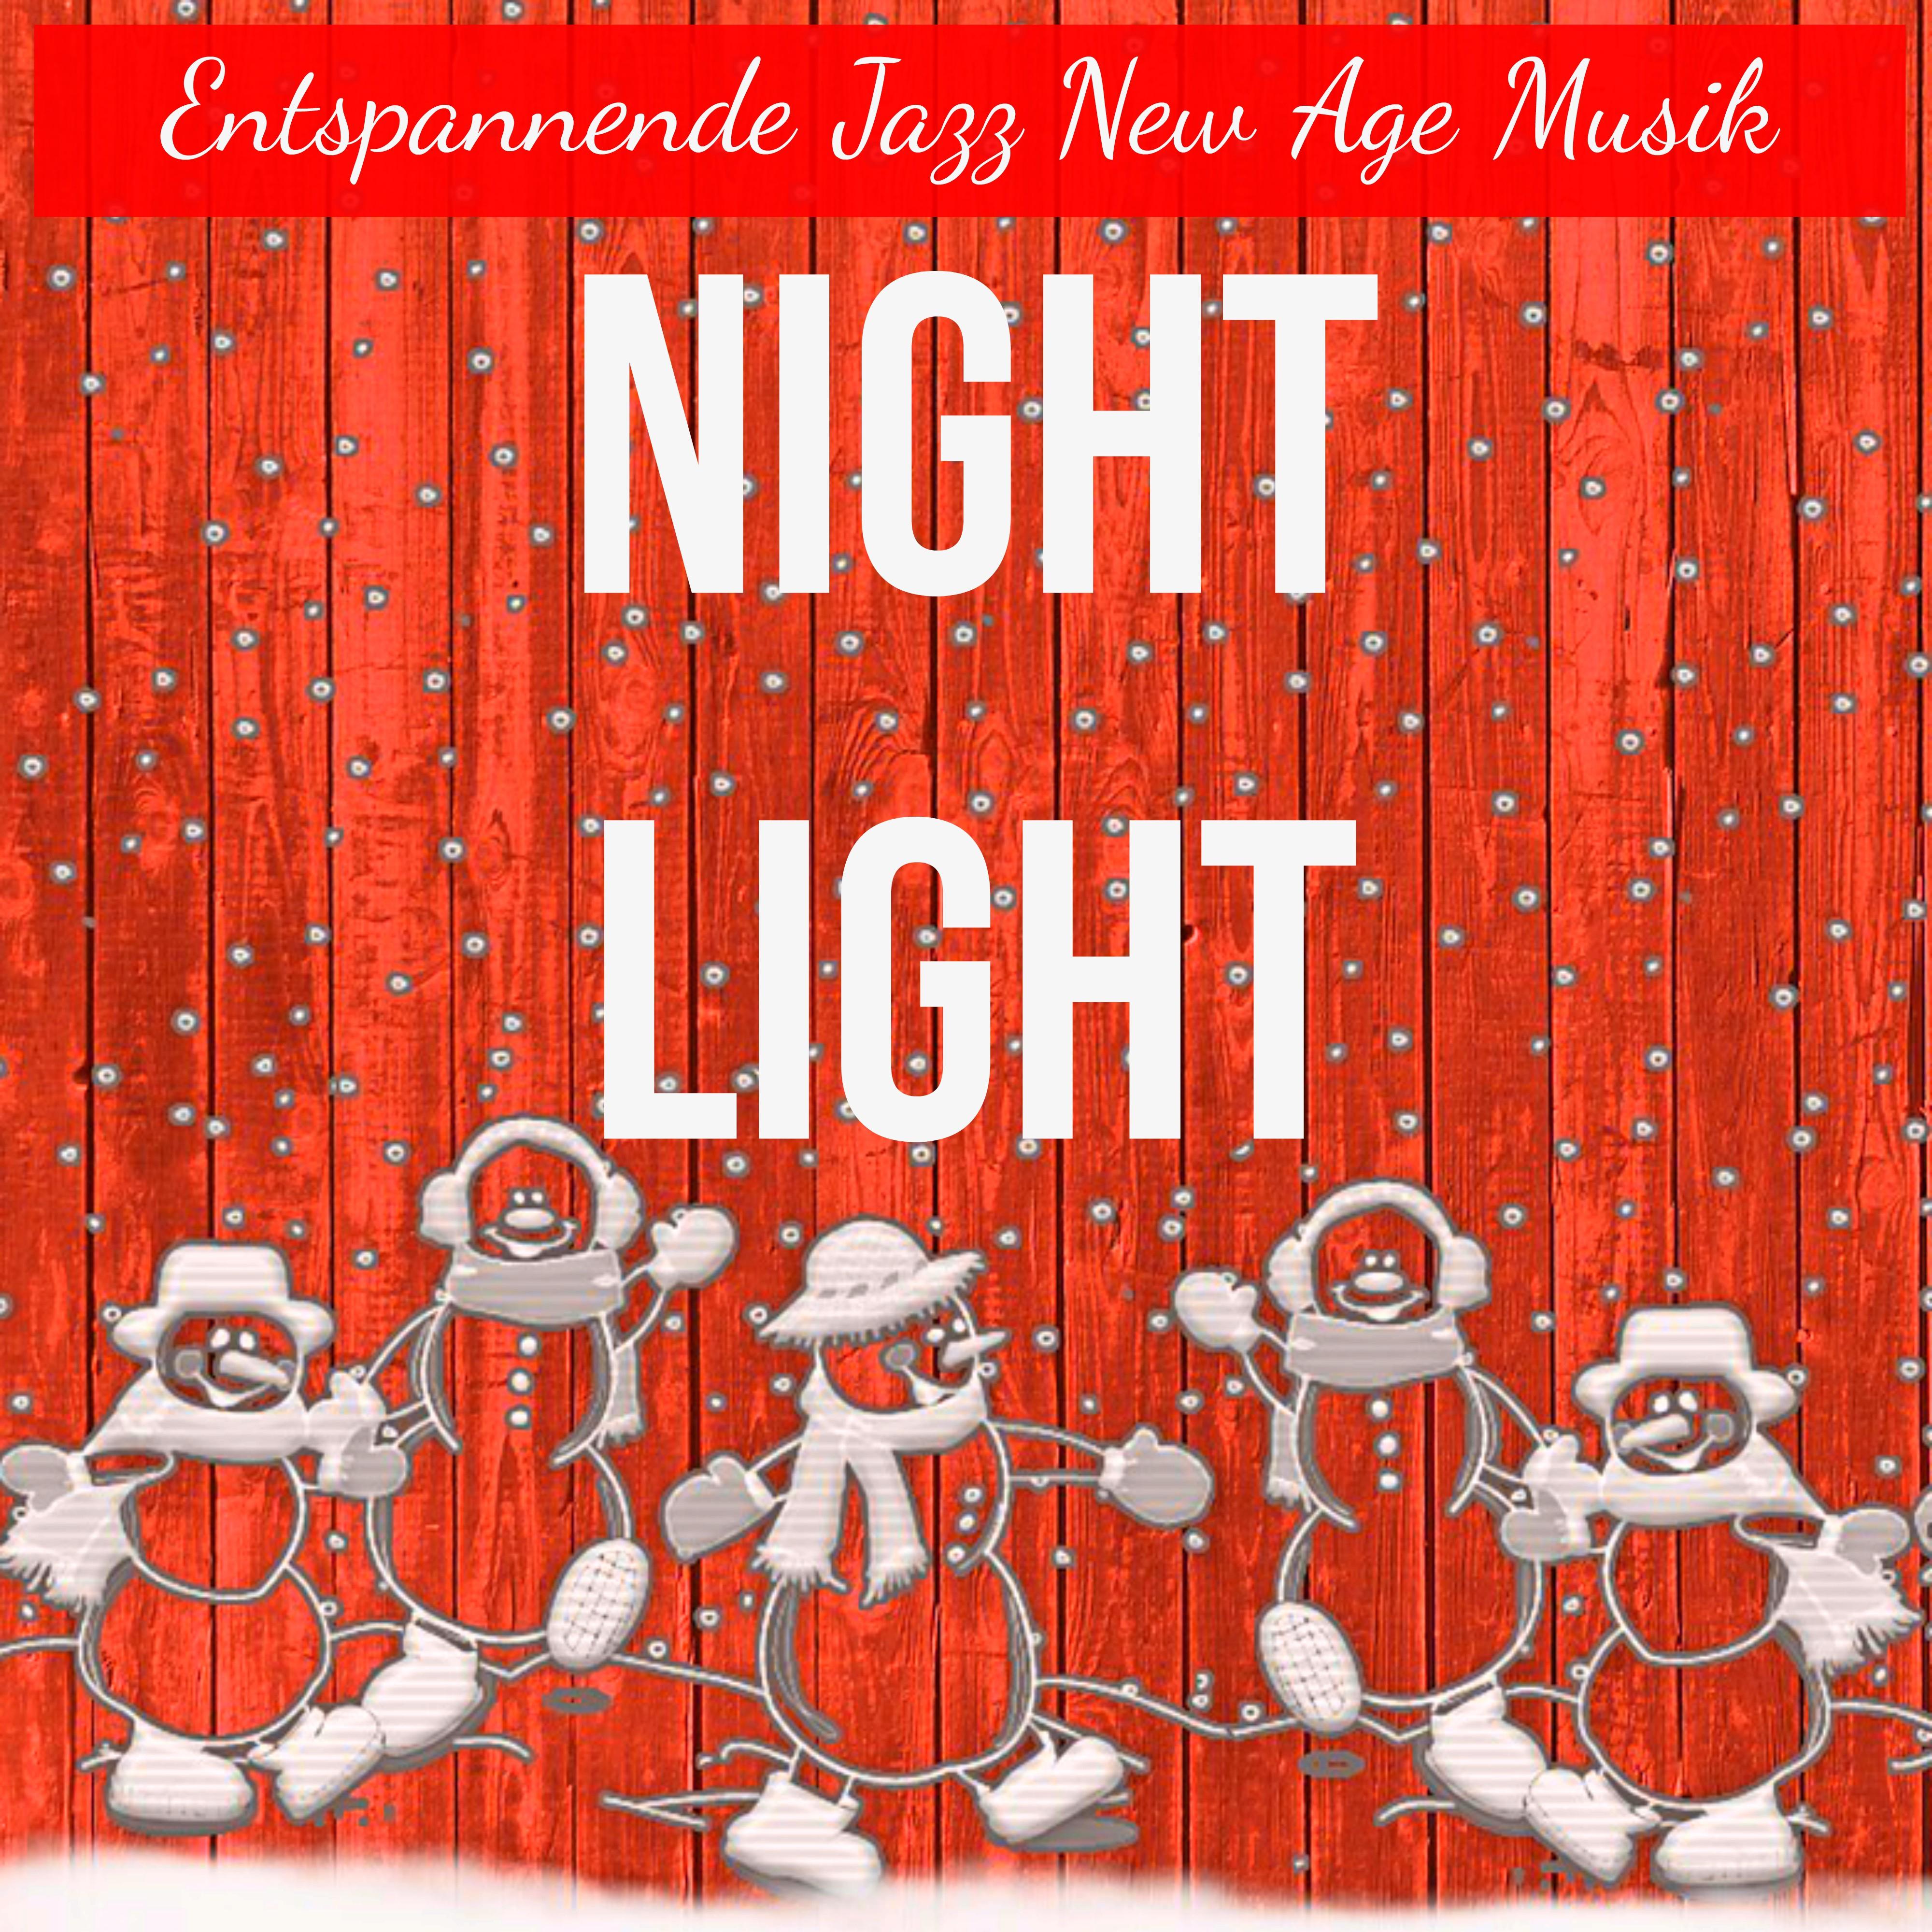 Night Light - Entspannende Jazz New Age Musik für Meditationsübungen Weihnachtsstimmung Gesundheit und Wohlbefinden